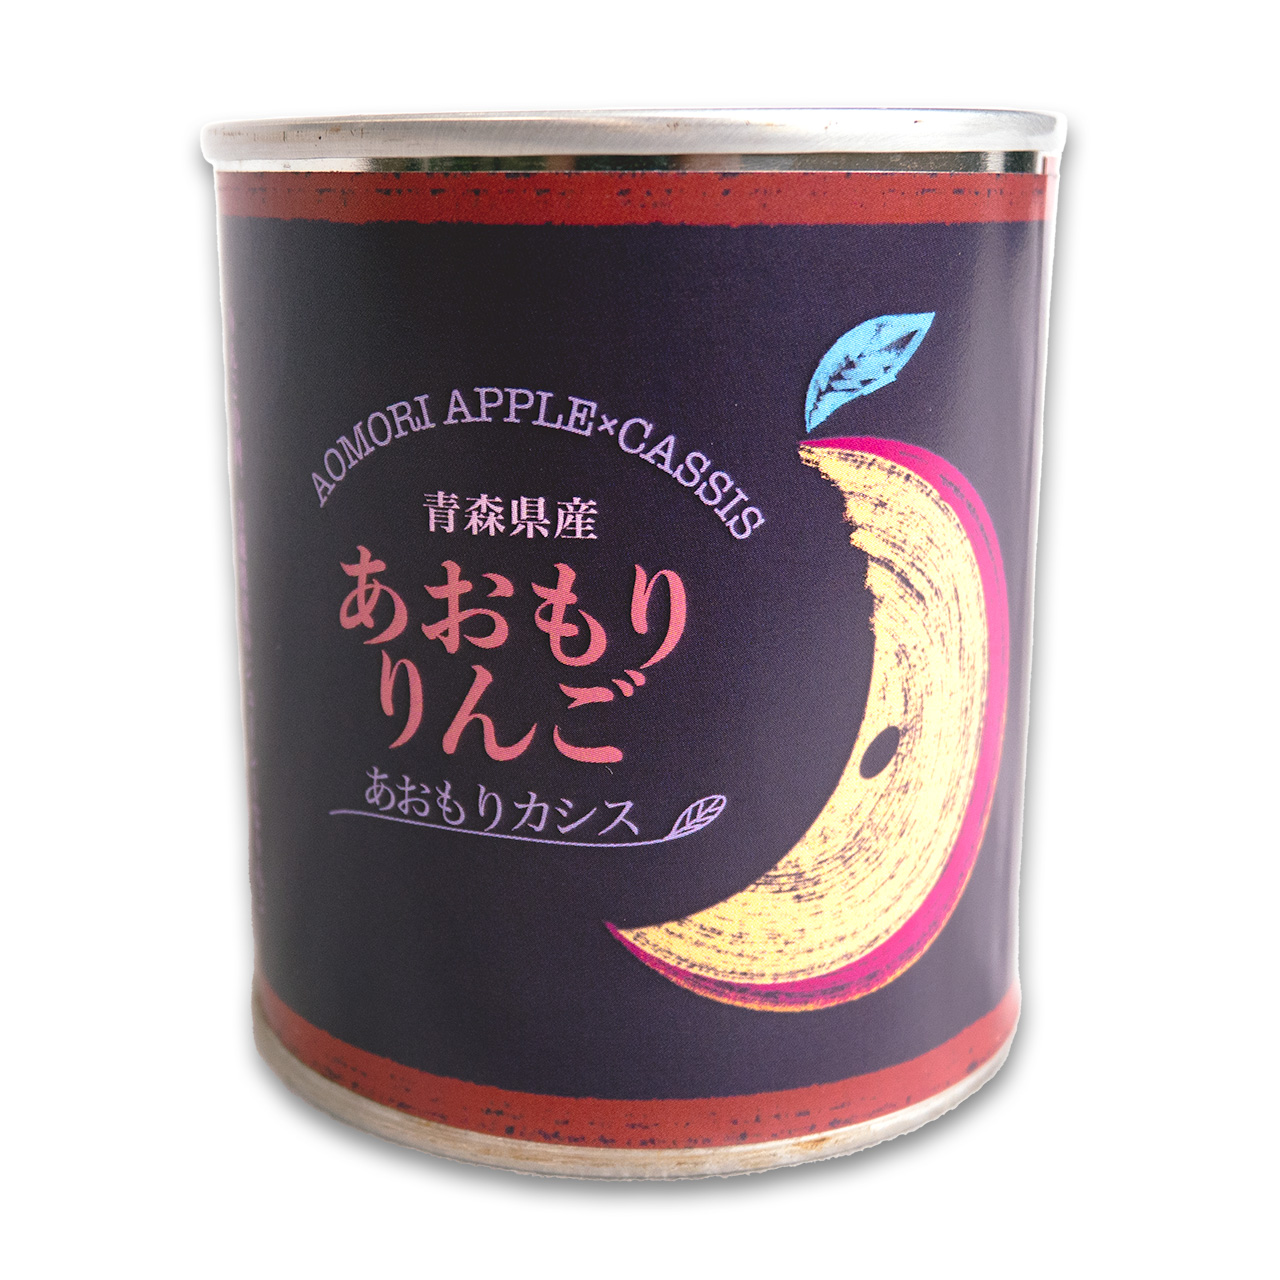 青森りんごのあおもりカシス漬けの缶詰、新発売！